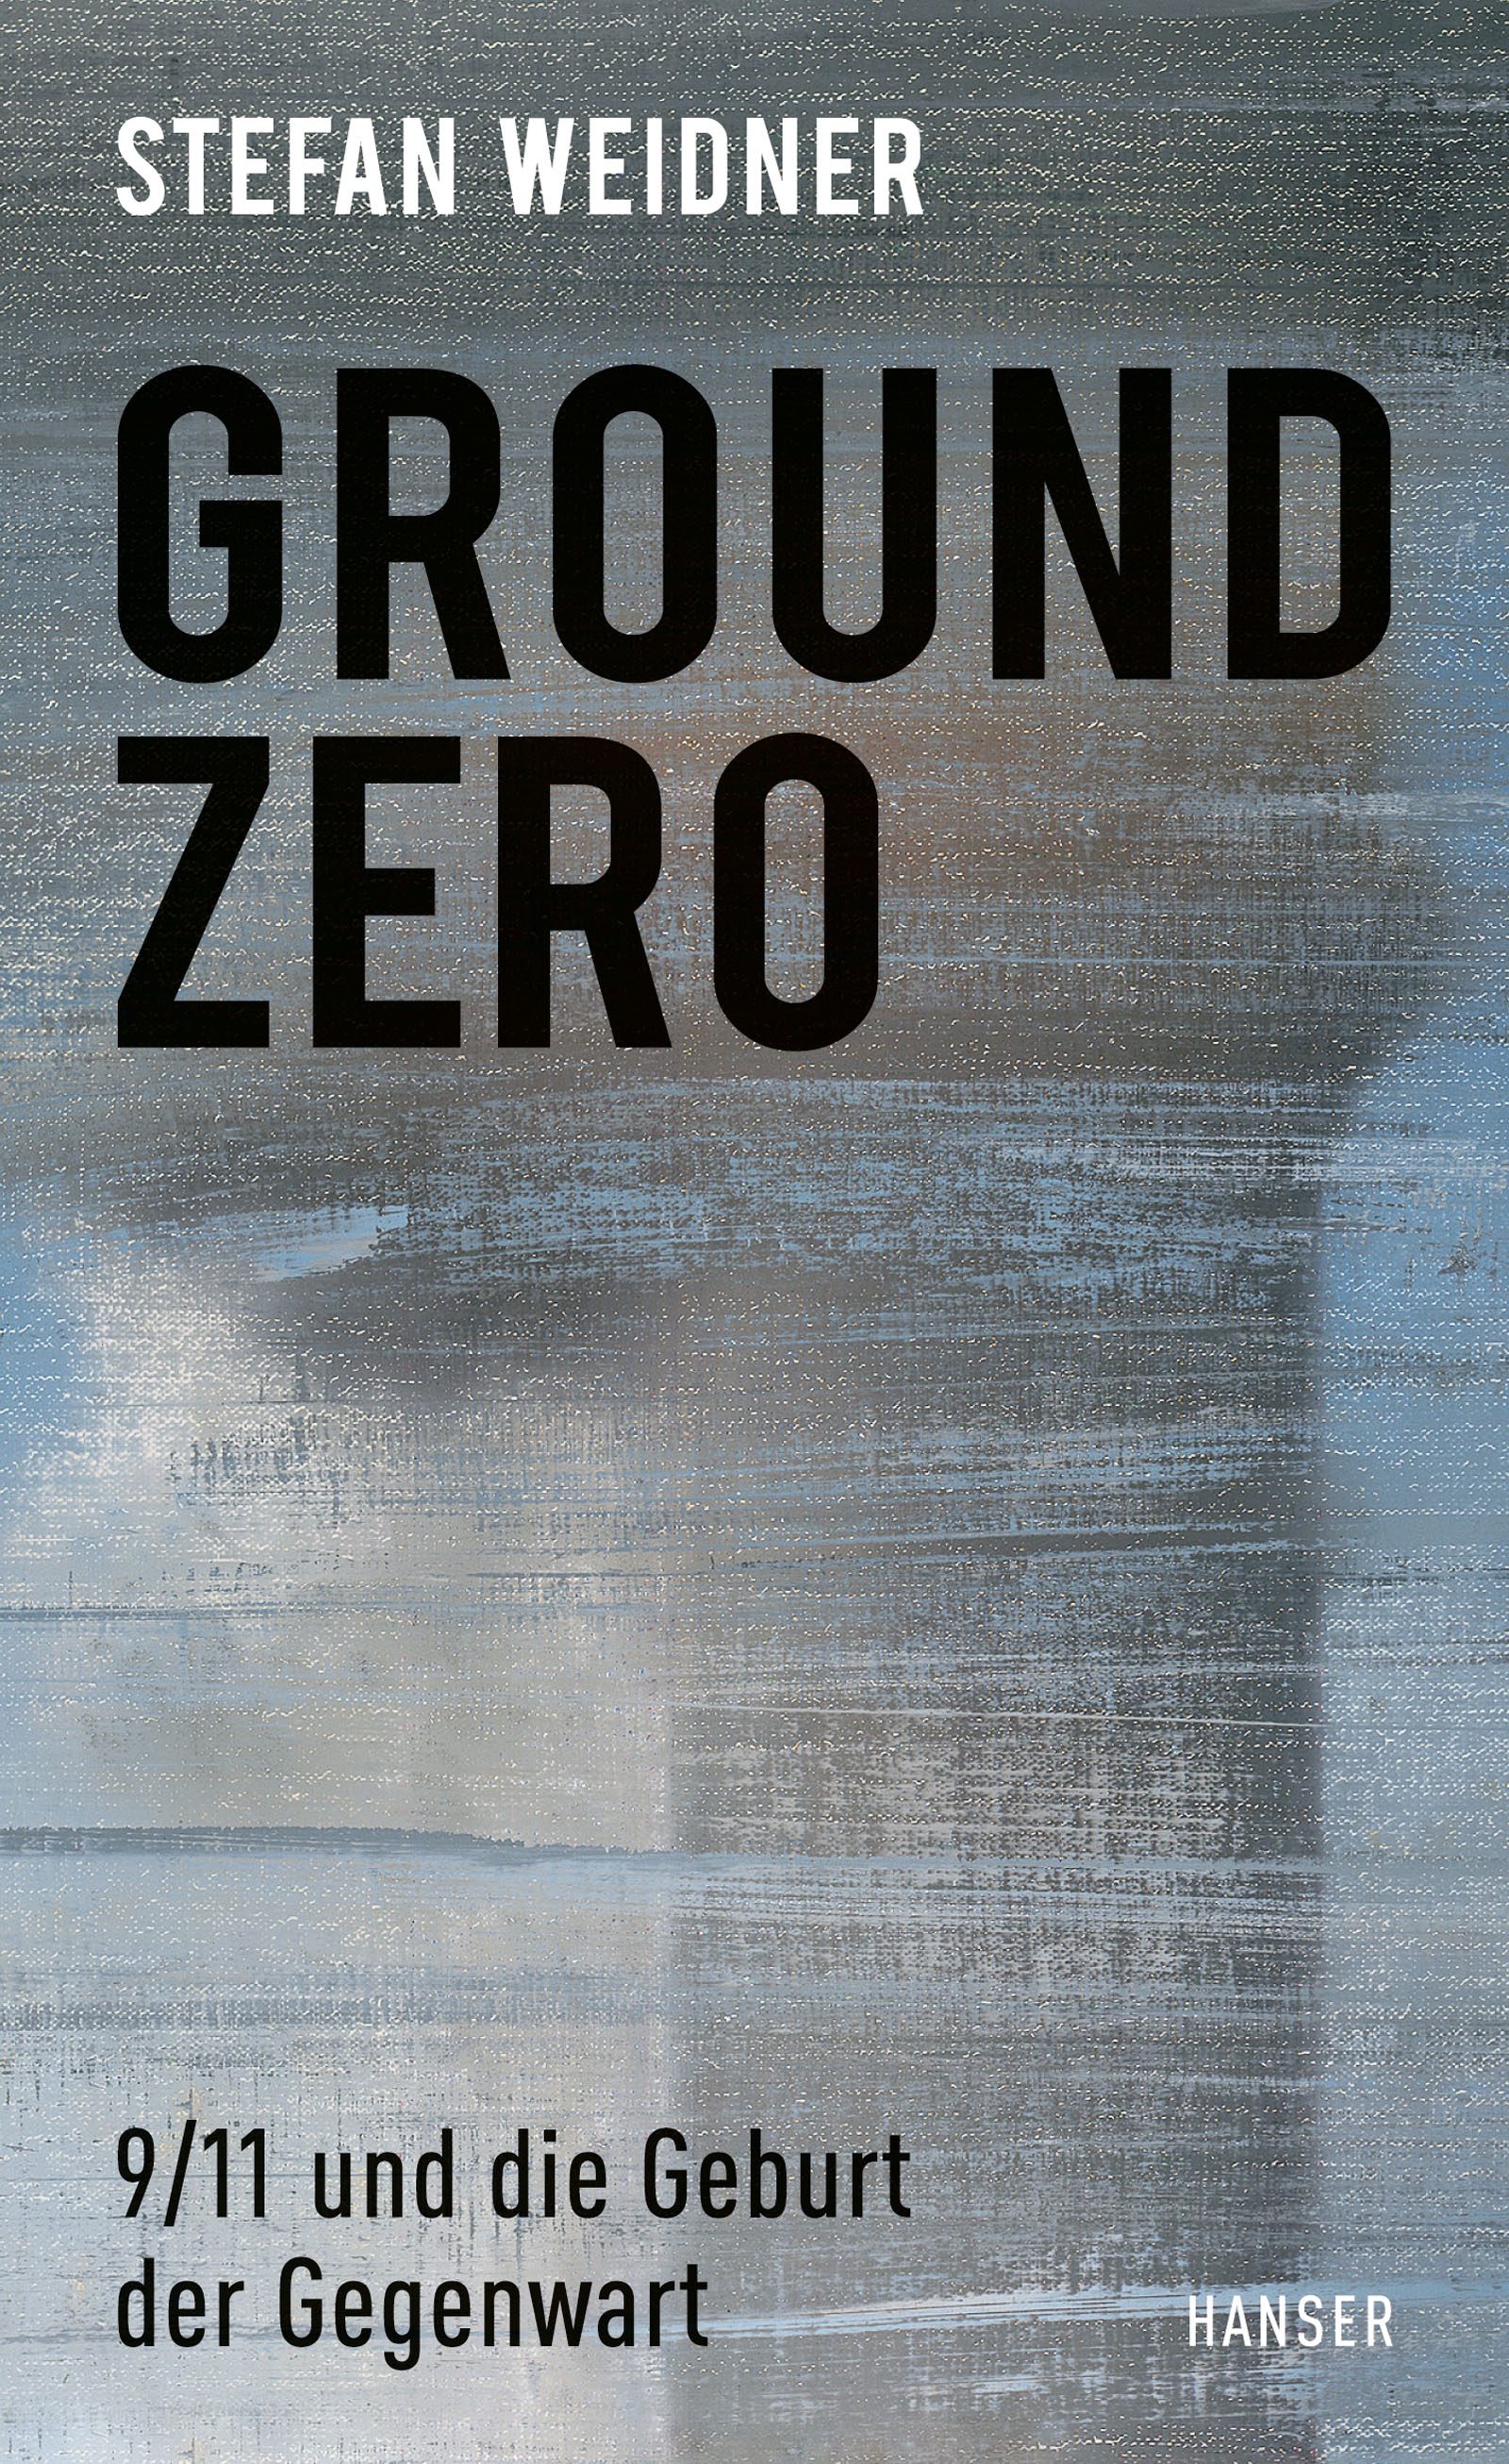 Cover of Stefan Weidner's "Ground Zero: 9/11 und die Geburt der Gegenwart" (published in German by Hanser)